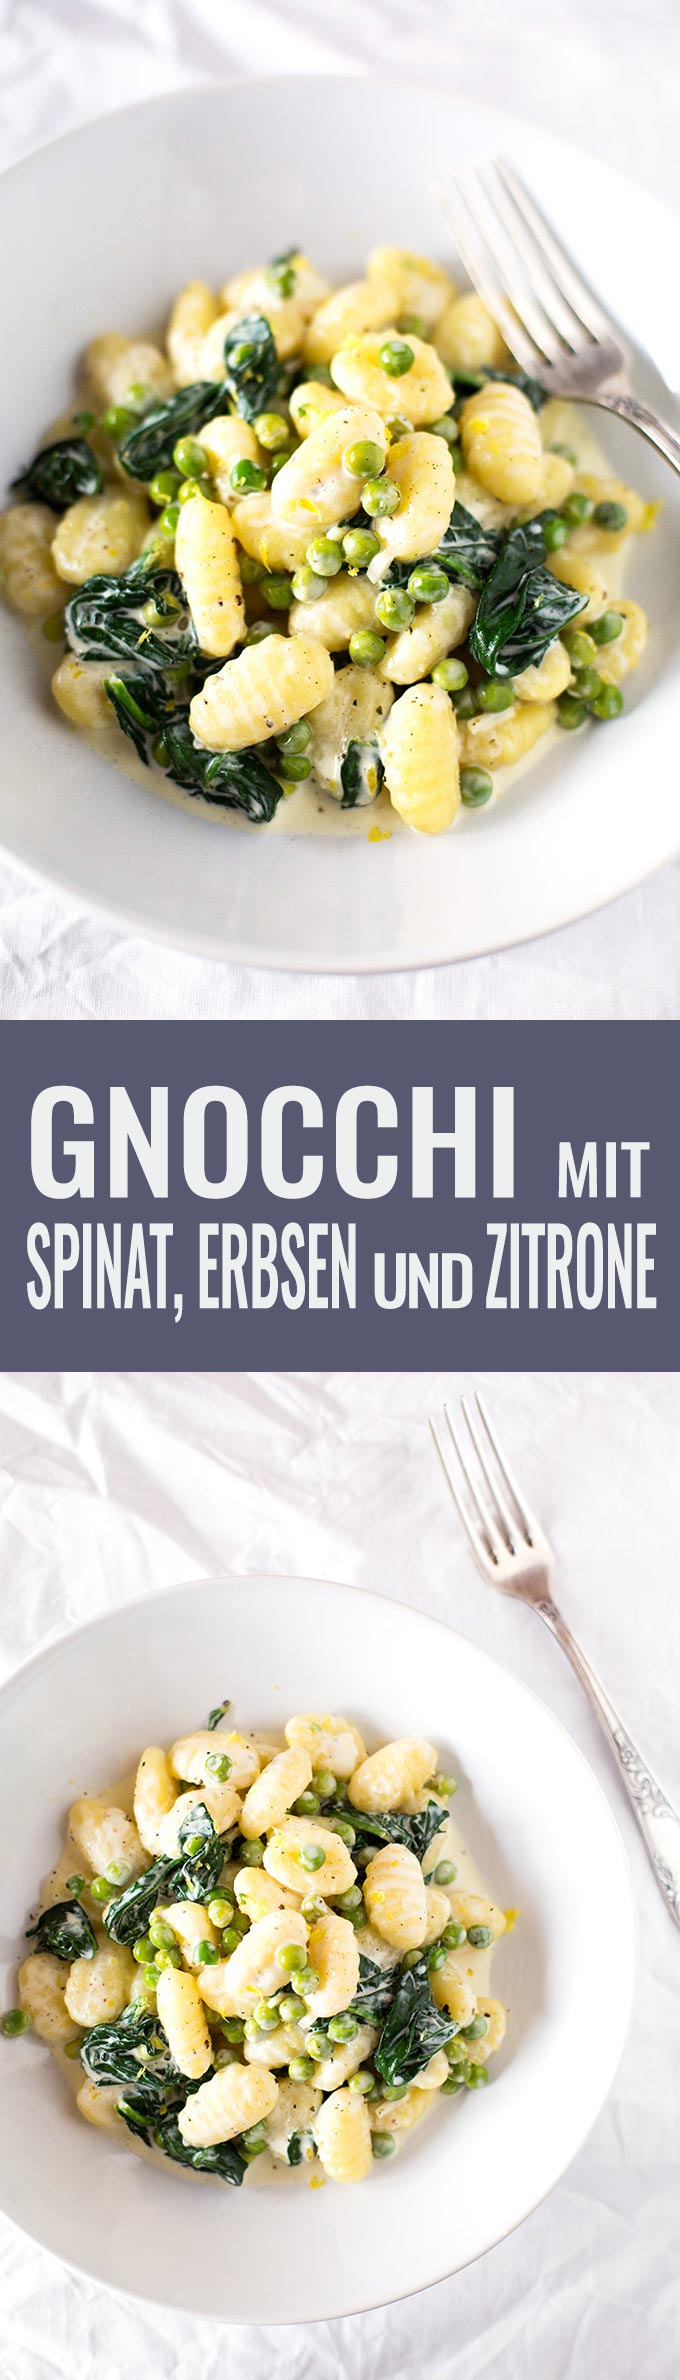 Gnocchi mit Erbsen, Spinat und Zitrone. Dieses Rezept ist schnell, einfach und vollgepackt mit Gemüse - Kochkarussell.com